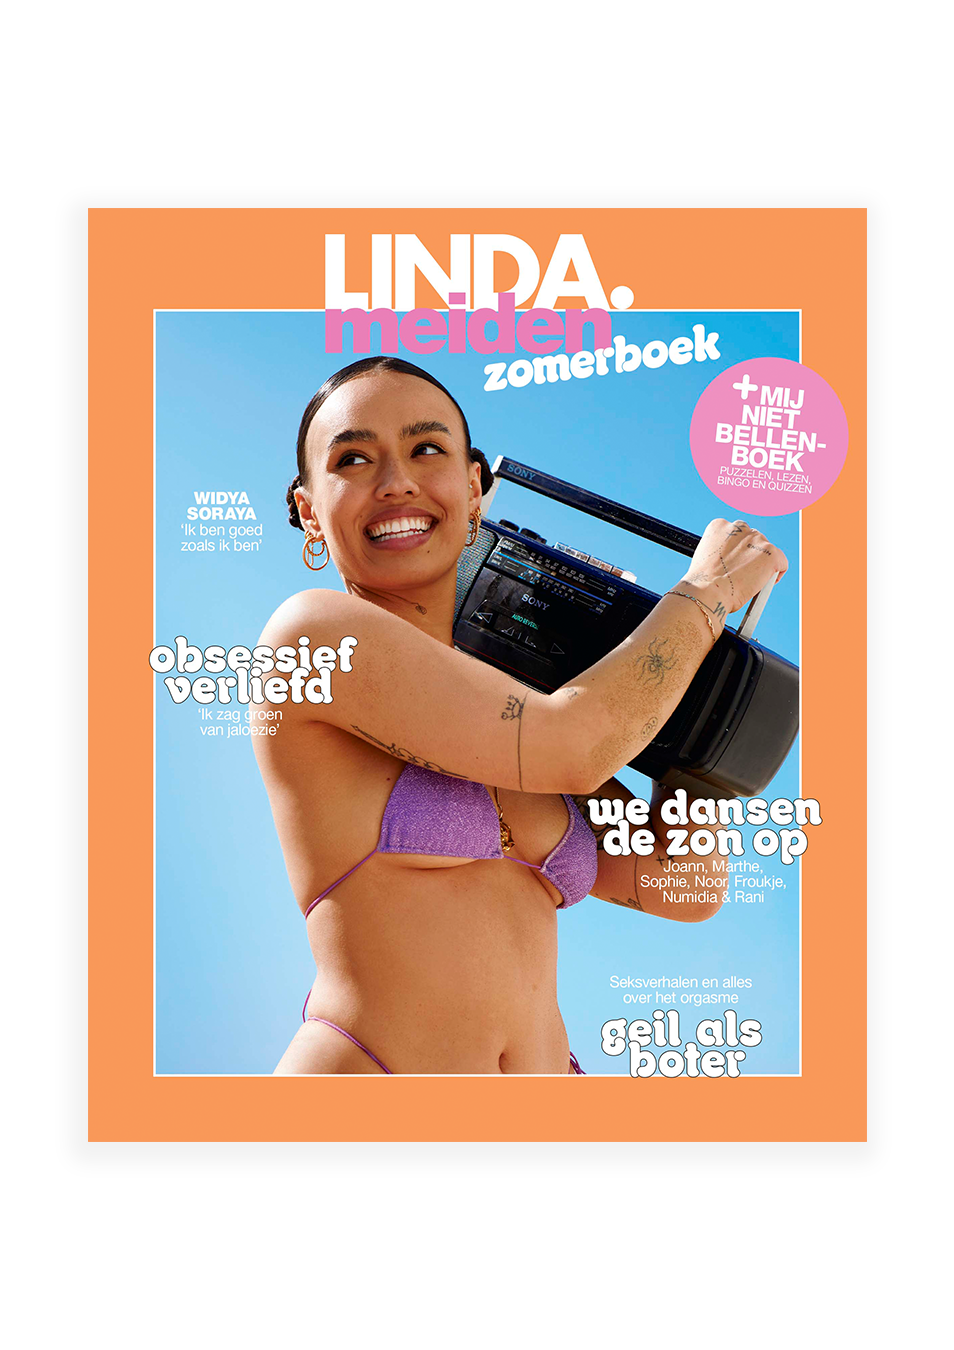 Linda.meiden zomerboek